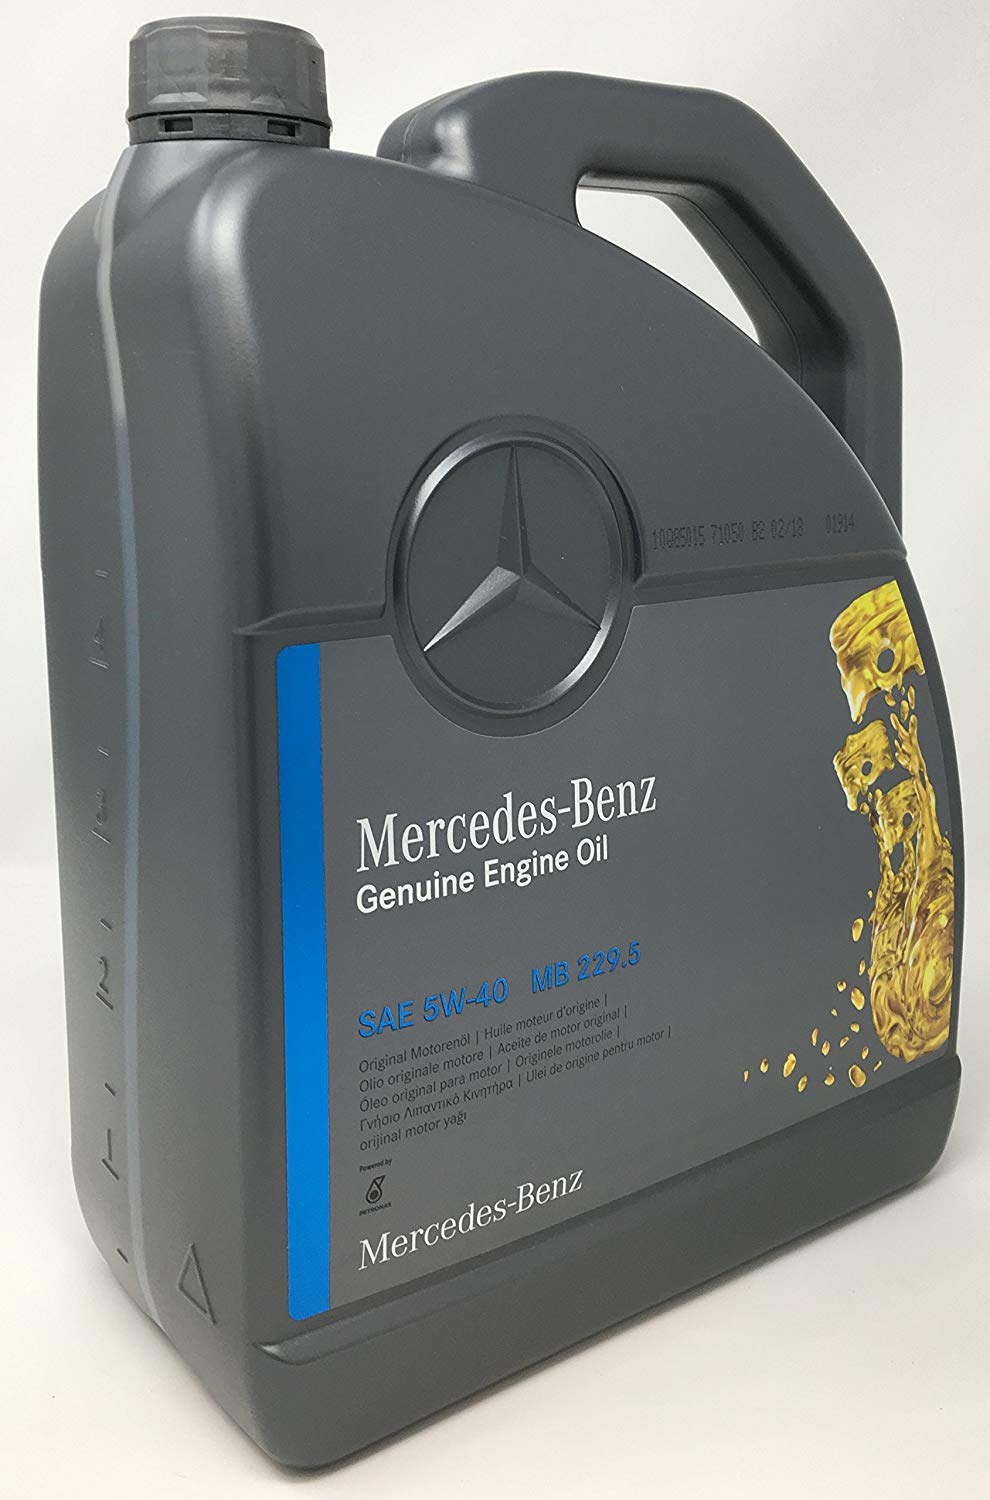 Olej silnikowy Mercedes Genuine Engine Oil 5W-40, 5L Mercedes A 000 989 92 02 13 AIFE